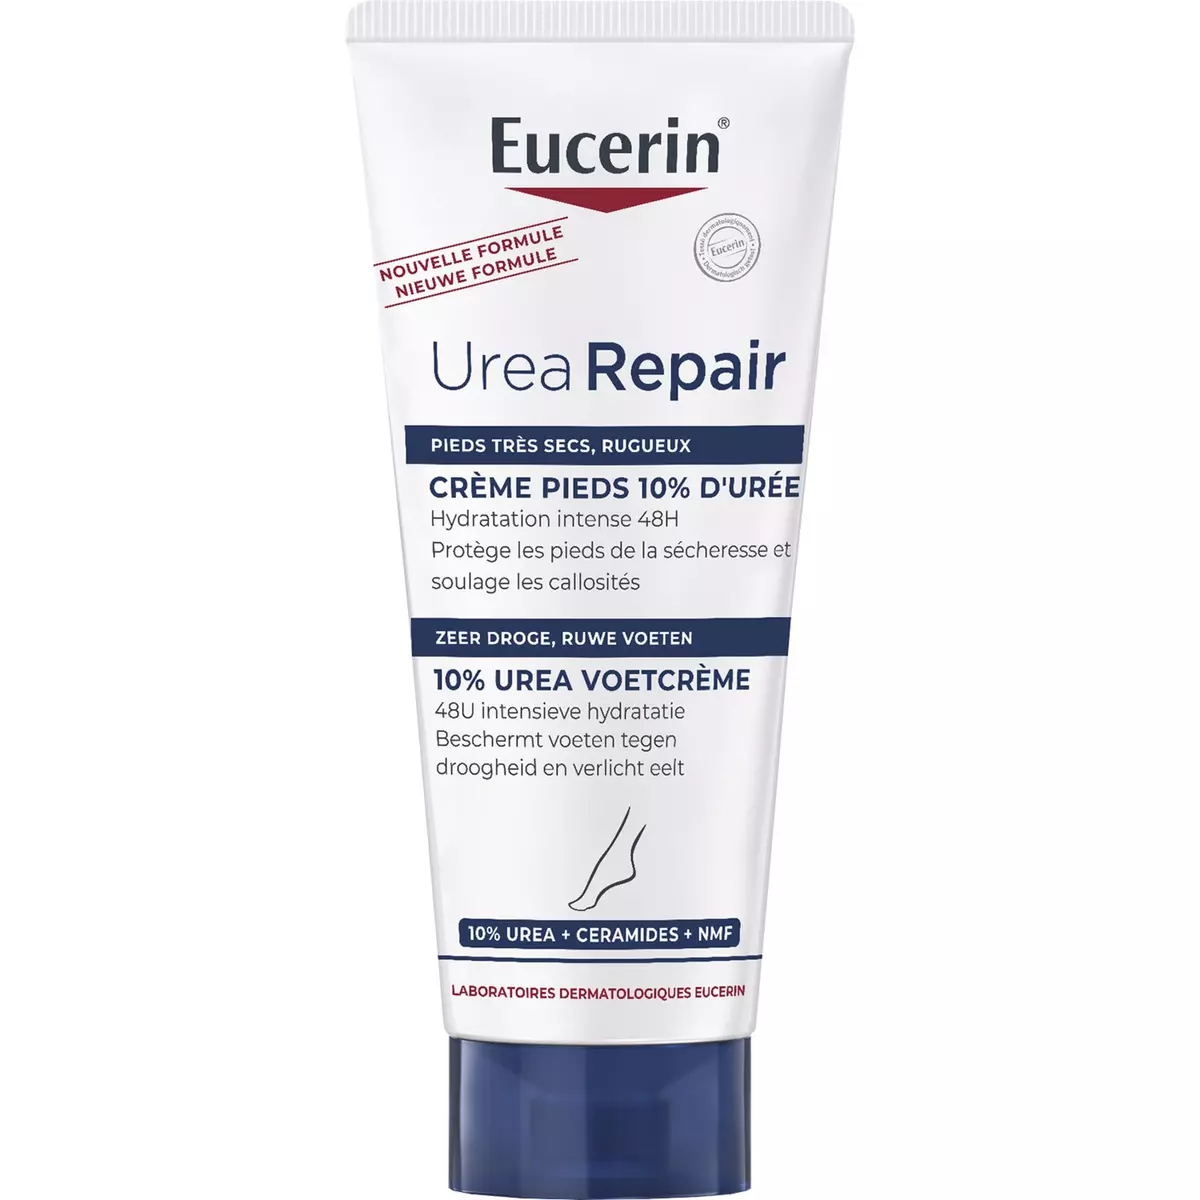 EUCERIN Urea repair plus crème pieds 10% d'urée peau très sèche et rugueuse 100ml